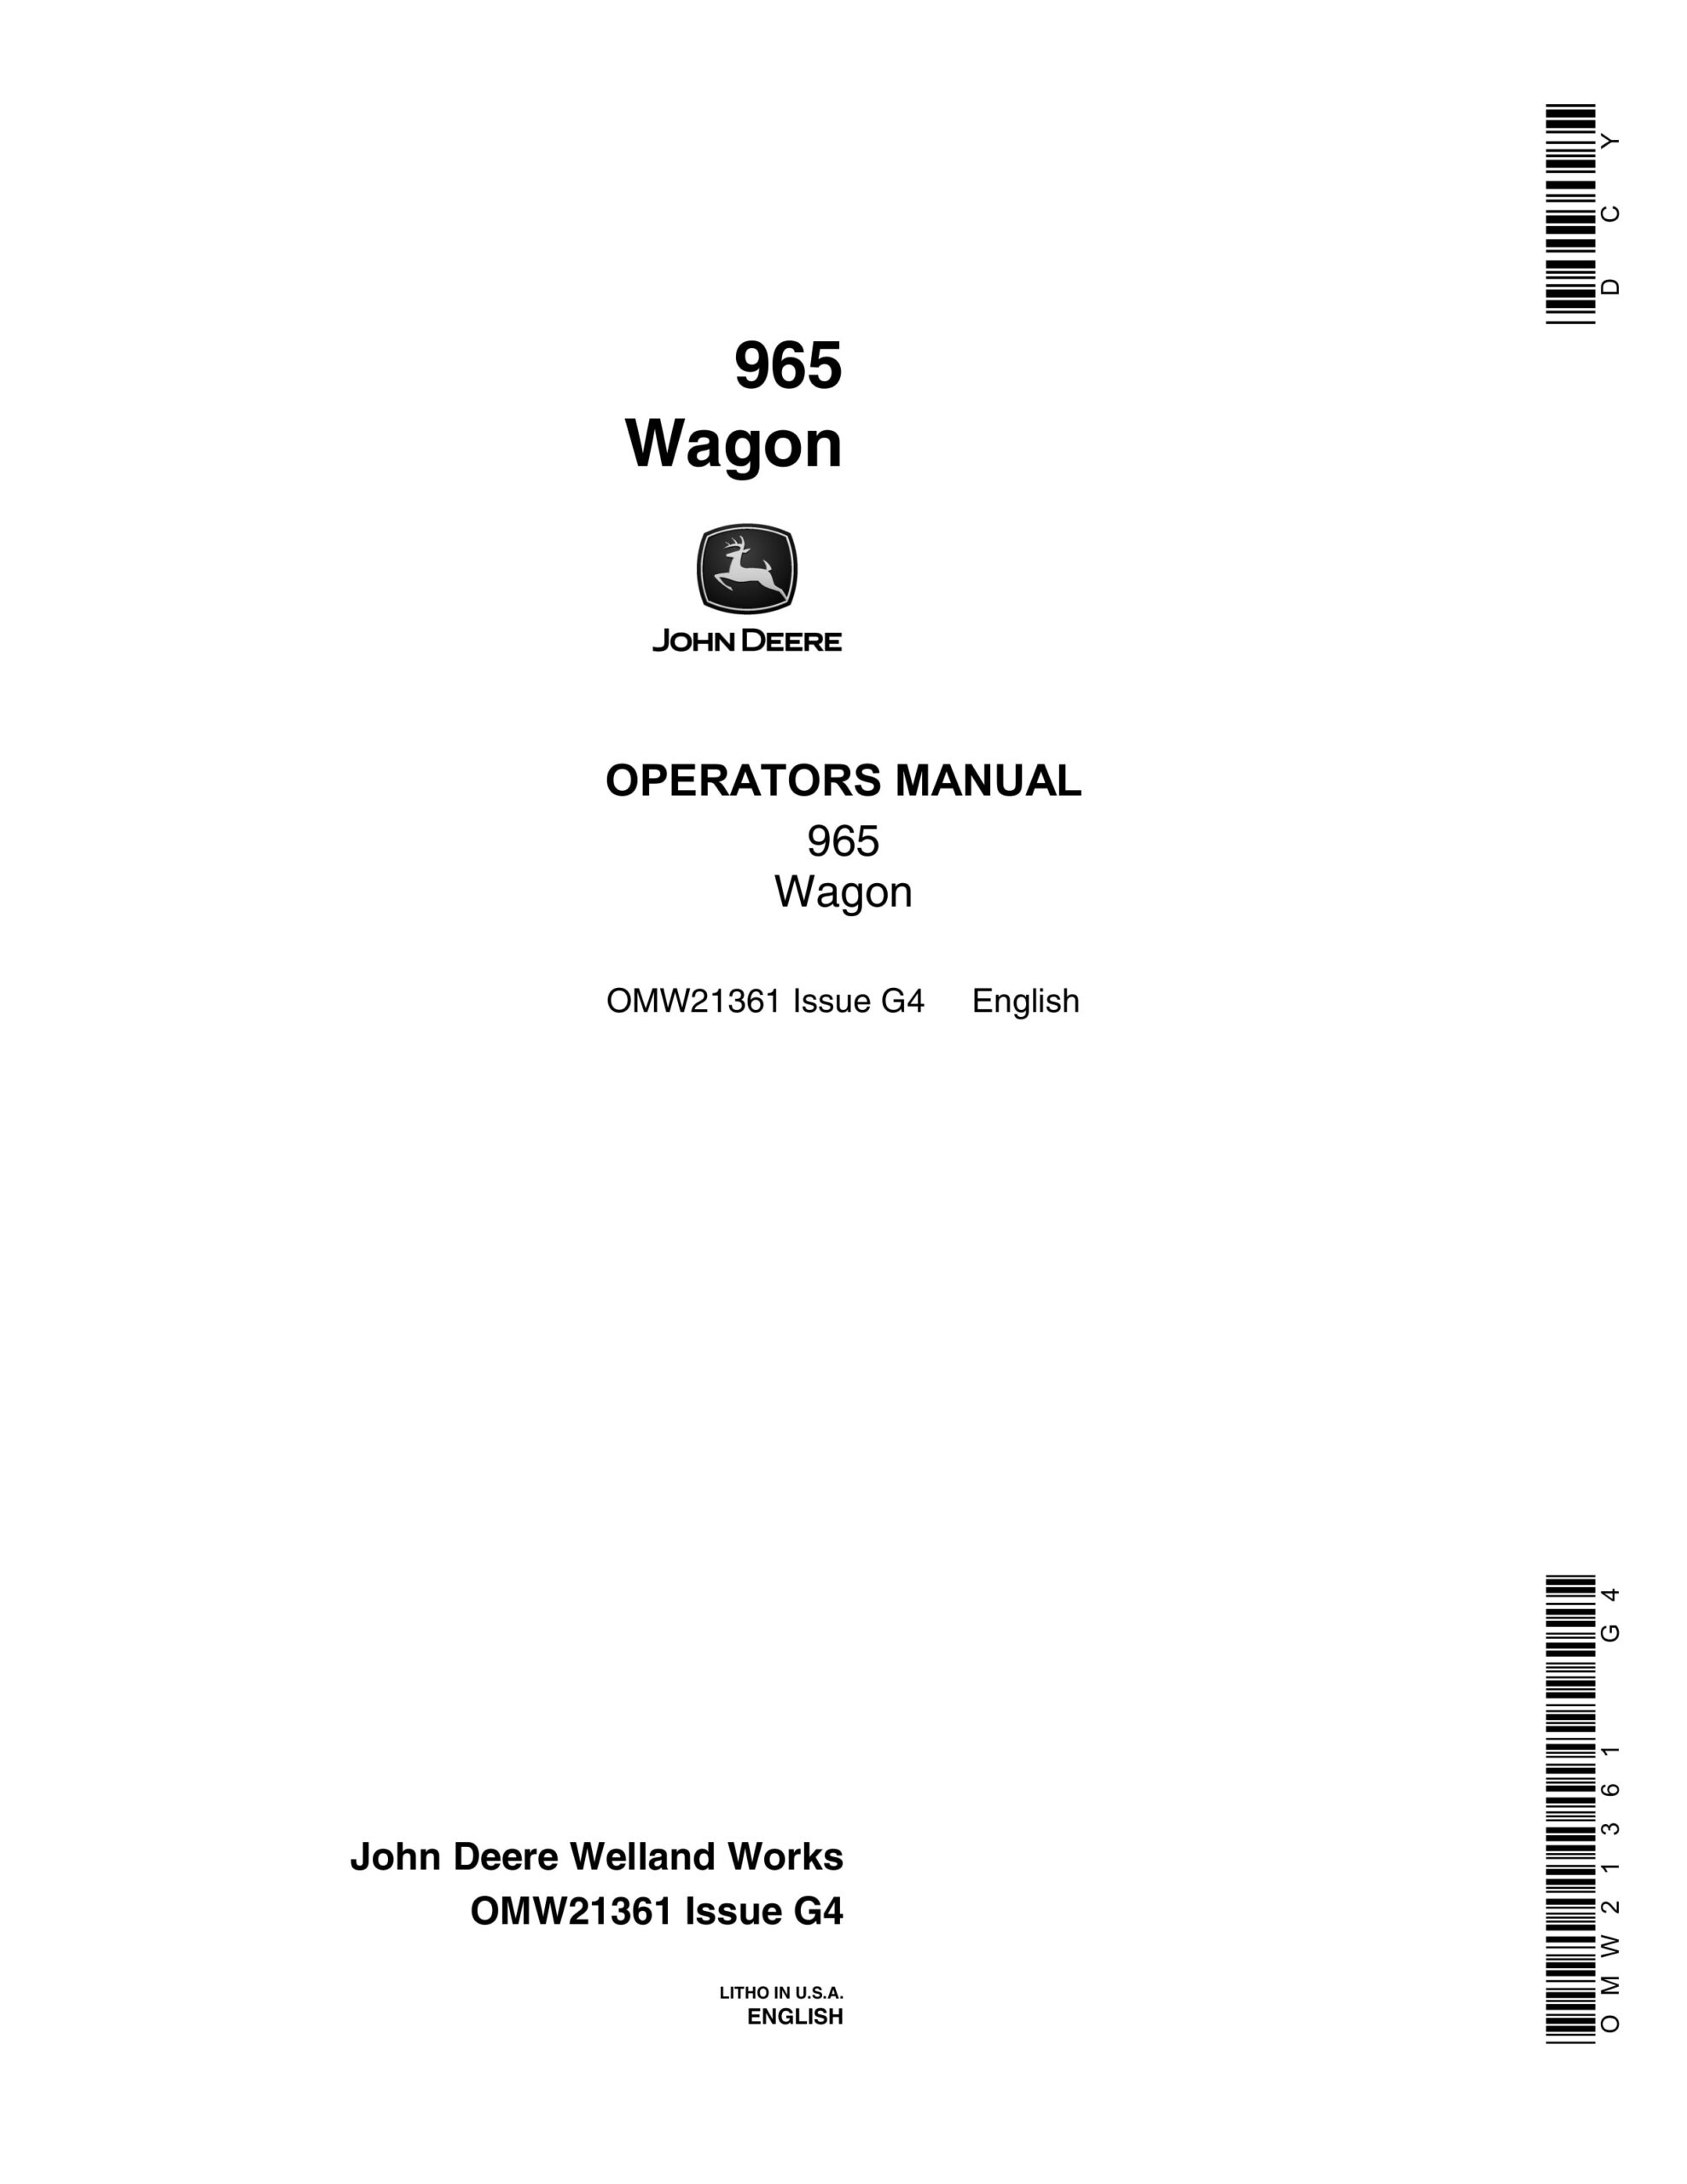 John Deere 965 Wagon Operator Manual OMW21361-1